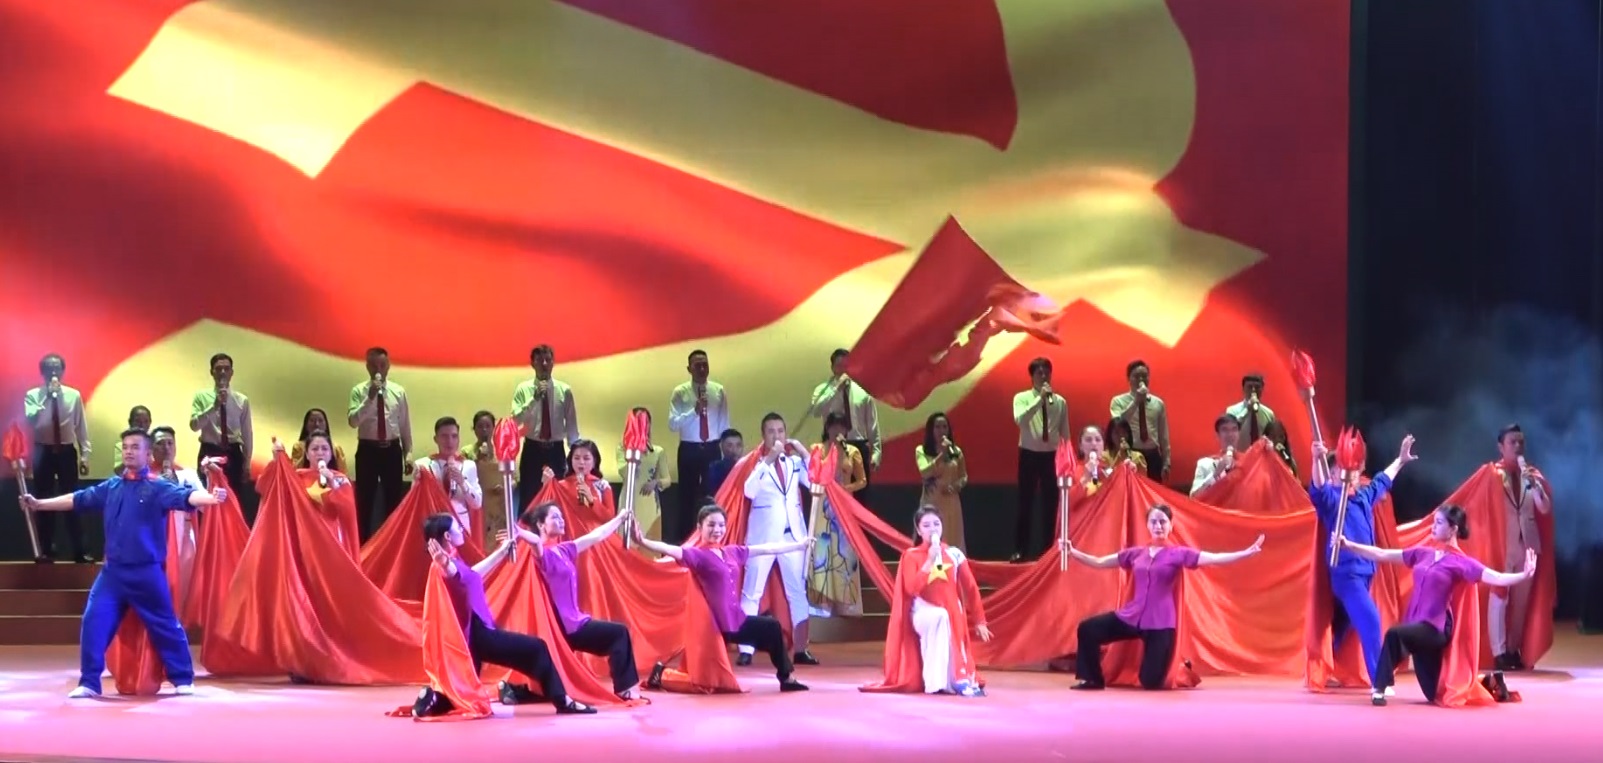 Chương trình nghệ thuật kỉ niệm 80 năm Đề cương văn hóa Việt Nam 